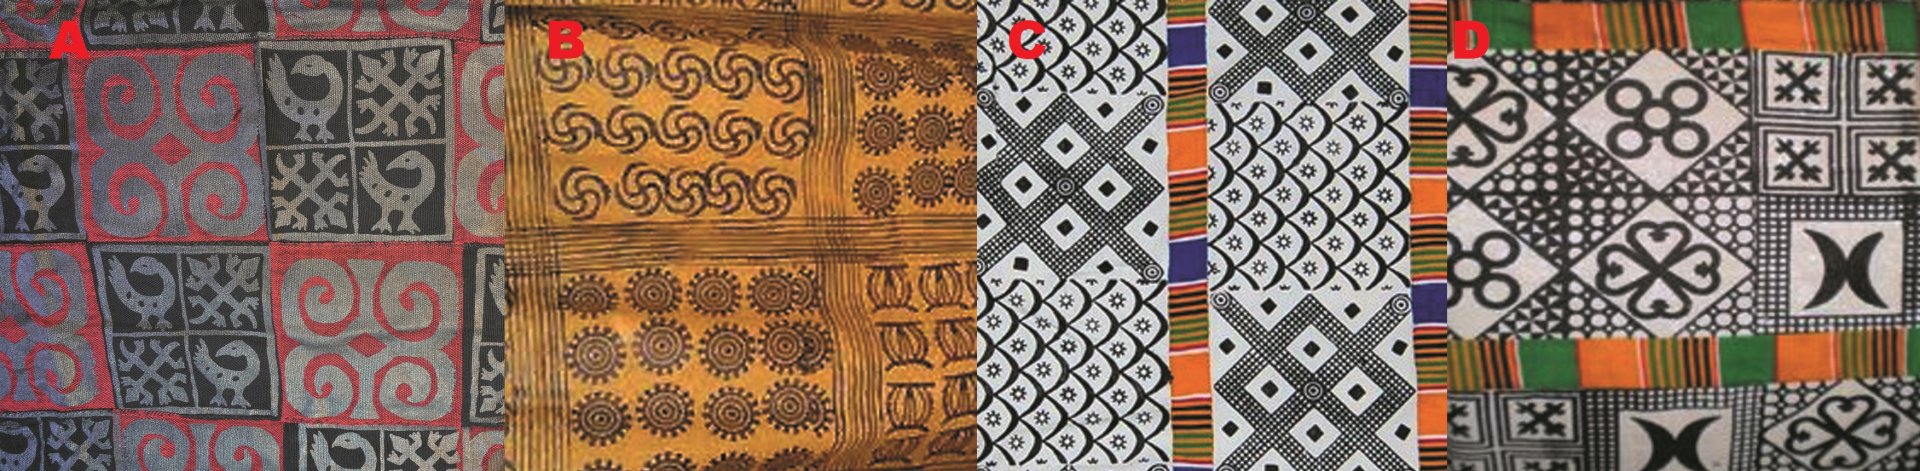 Obr.7 Jednotlivé konečné typy tisků adinkra: A) Mpakyiwa typ, B) Nhwimu typ (lineární značení), Převzato z: http://www.adrri.org C) Kente typ (sešito s pruhy textilie kente) Převzato z: britishmuseum.org, D) Nwomu typ (sešito s pruhy výšivek nwomu) Převza